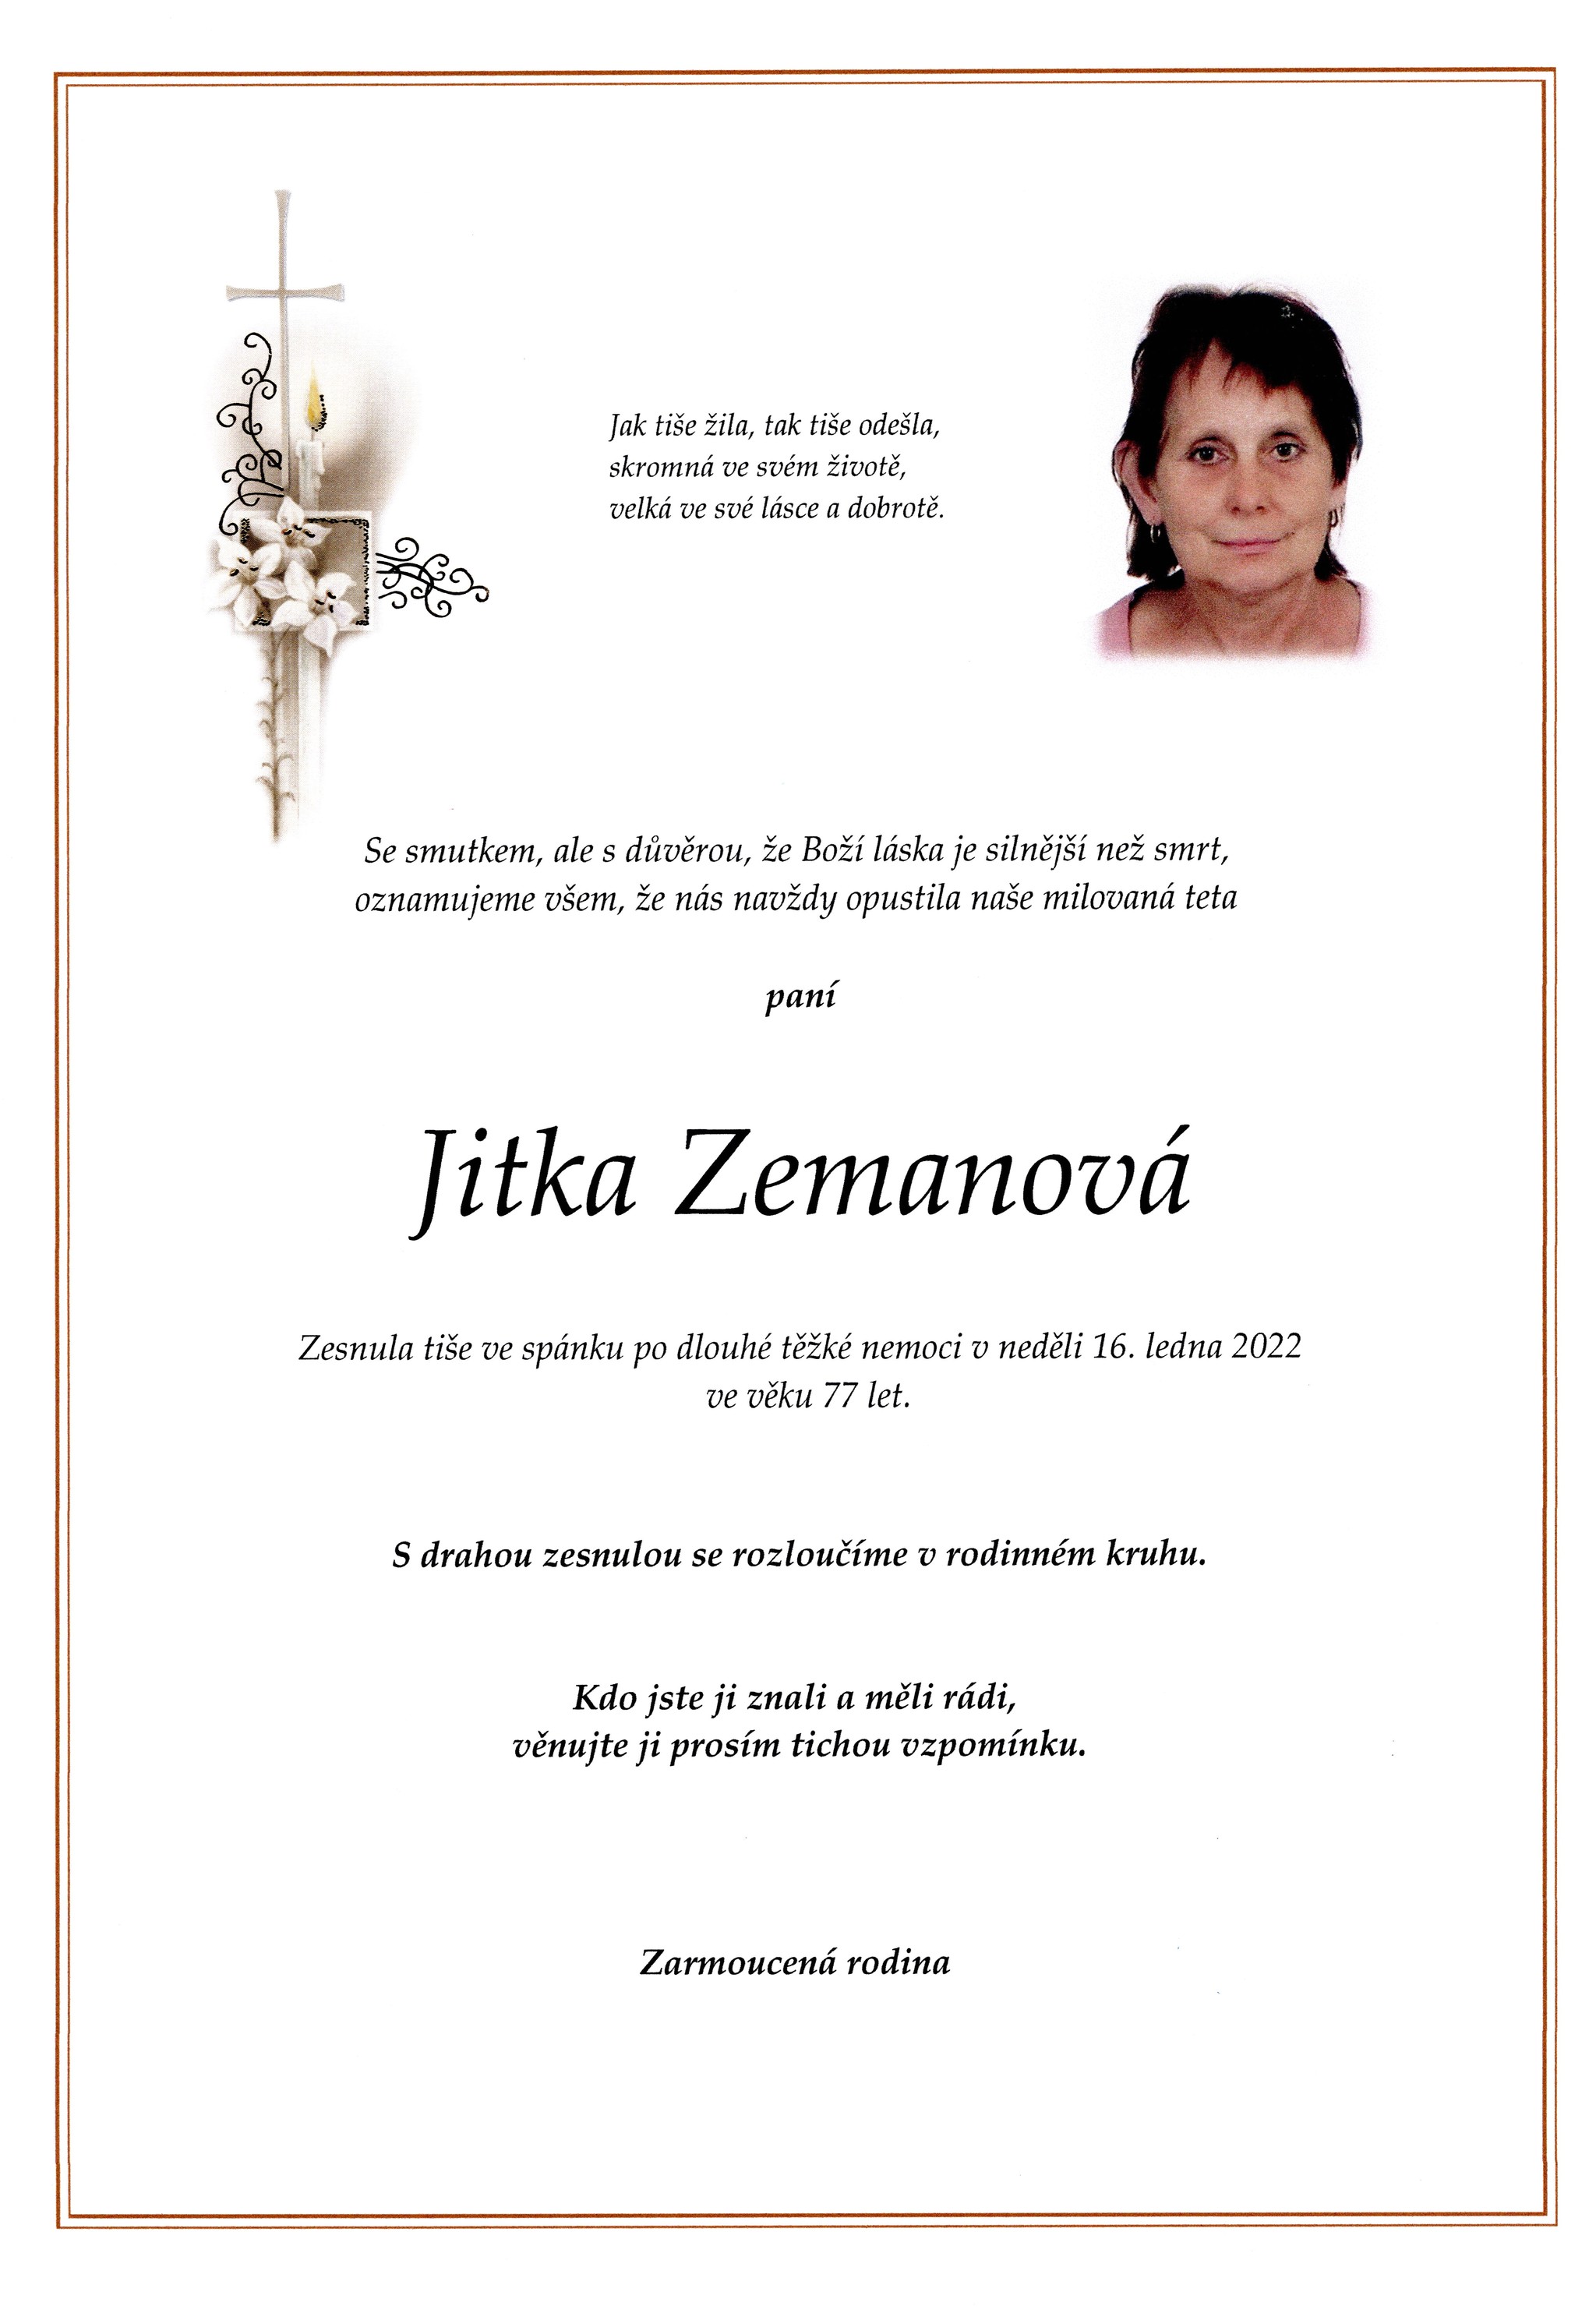 Jitka Zemanová